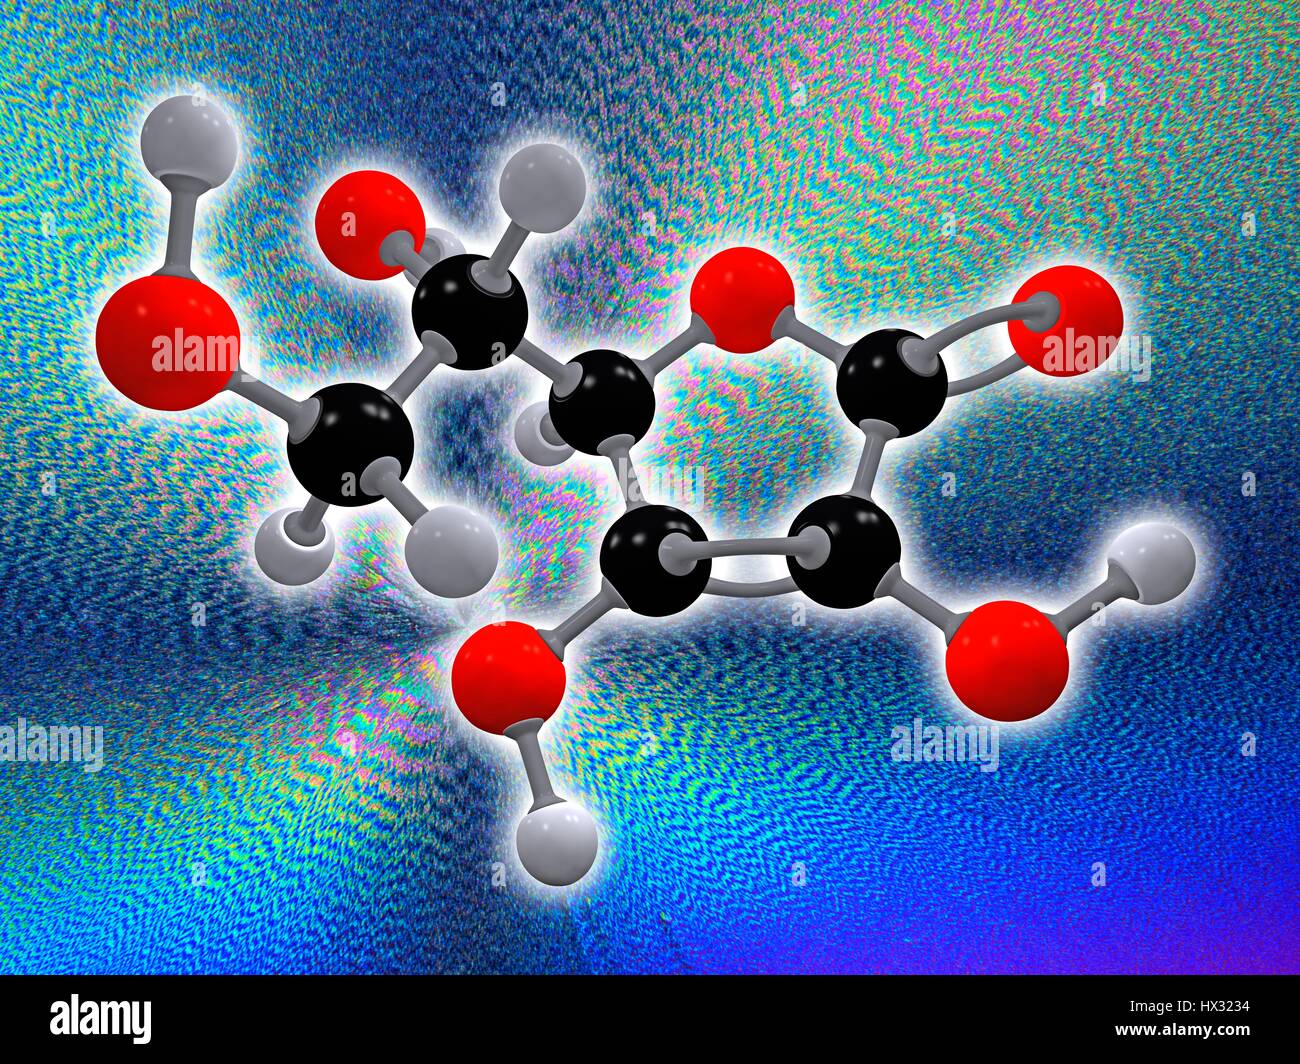 Vitamin C. molekulare Modell der Ascorbinsäure (C6. H8. O6), auch bekannt als Vitamin c. Dieses Vitamin ist erforderlich, um den Körper vor oxidativem Stress zu schützen. Atome als Kugeln dargestellt werden und sind farblich gekennzeichnet: Kohlenstoff (schwarz), Wasserstoff (grau) und Sauerstoff (rot). Im Hintergrund ein Schliffbild von kristallisiertes Vitamin C mit polarisiertem Licht aufgenommen. Stockfoto